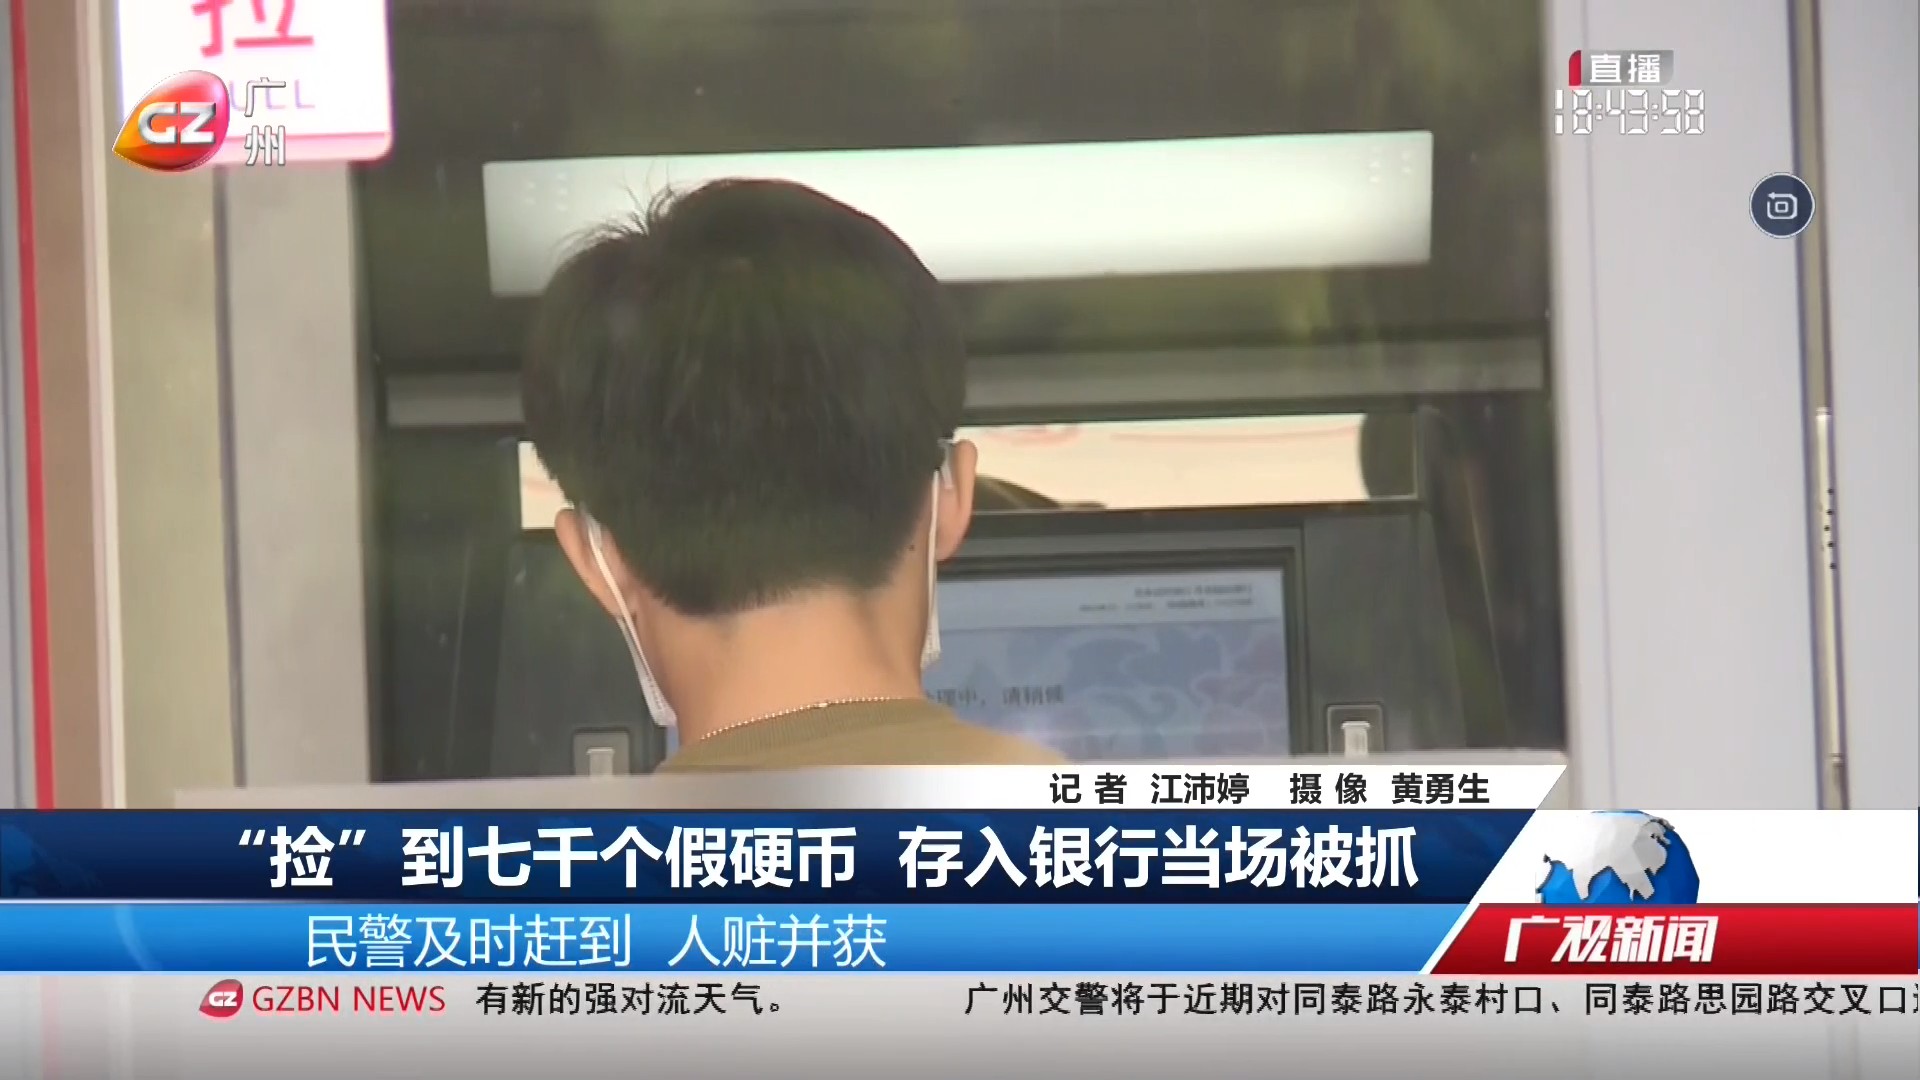 广州台综合频道 广视新闻 “捡”到七千个硬币 存入银行当场被抓